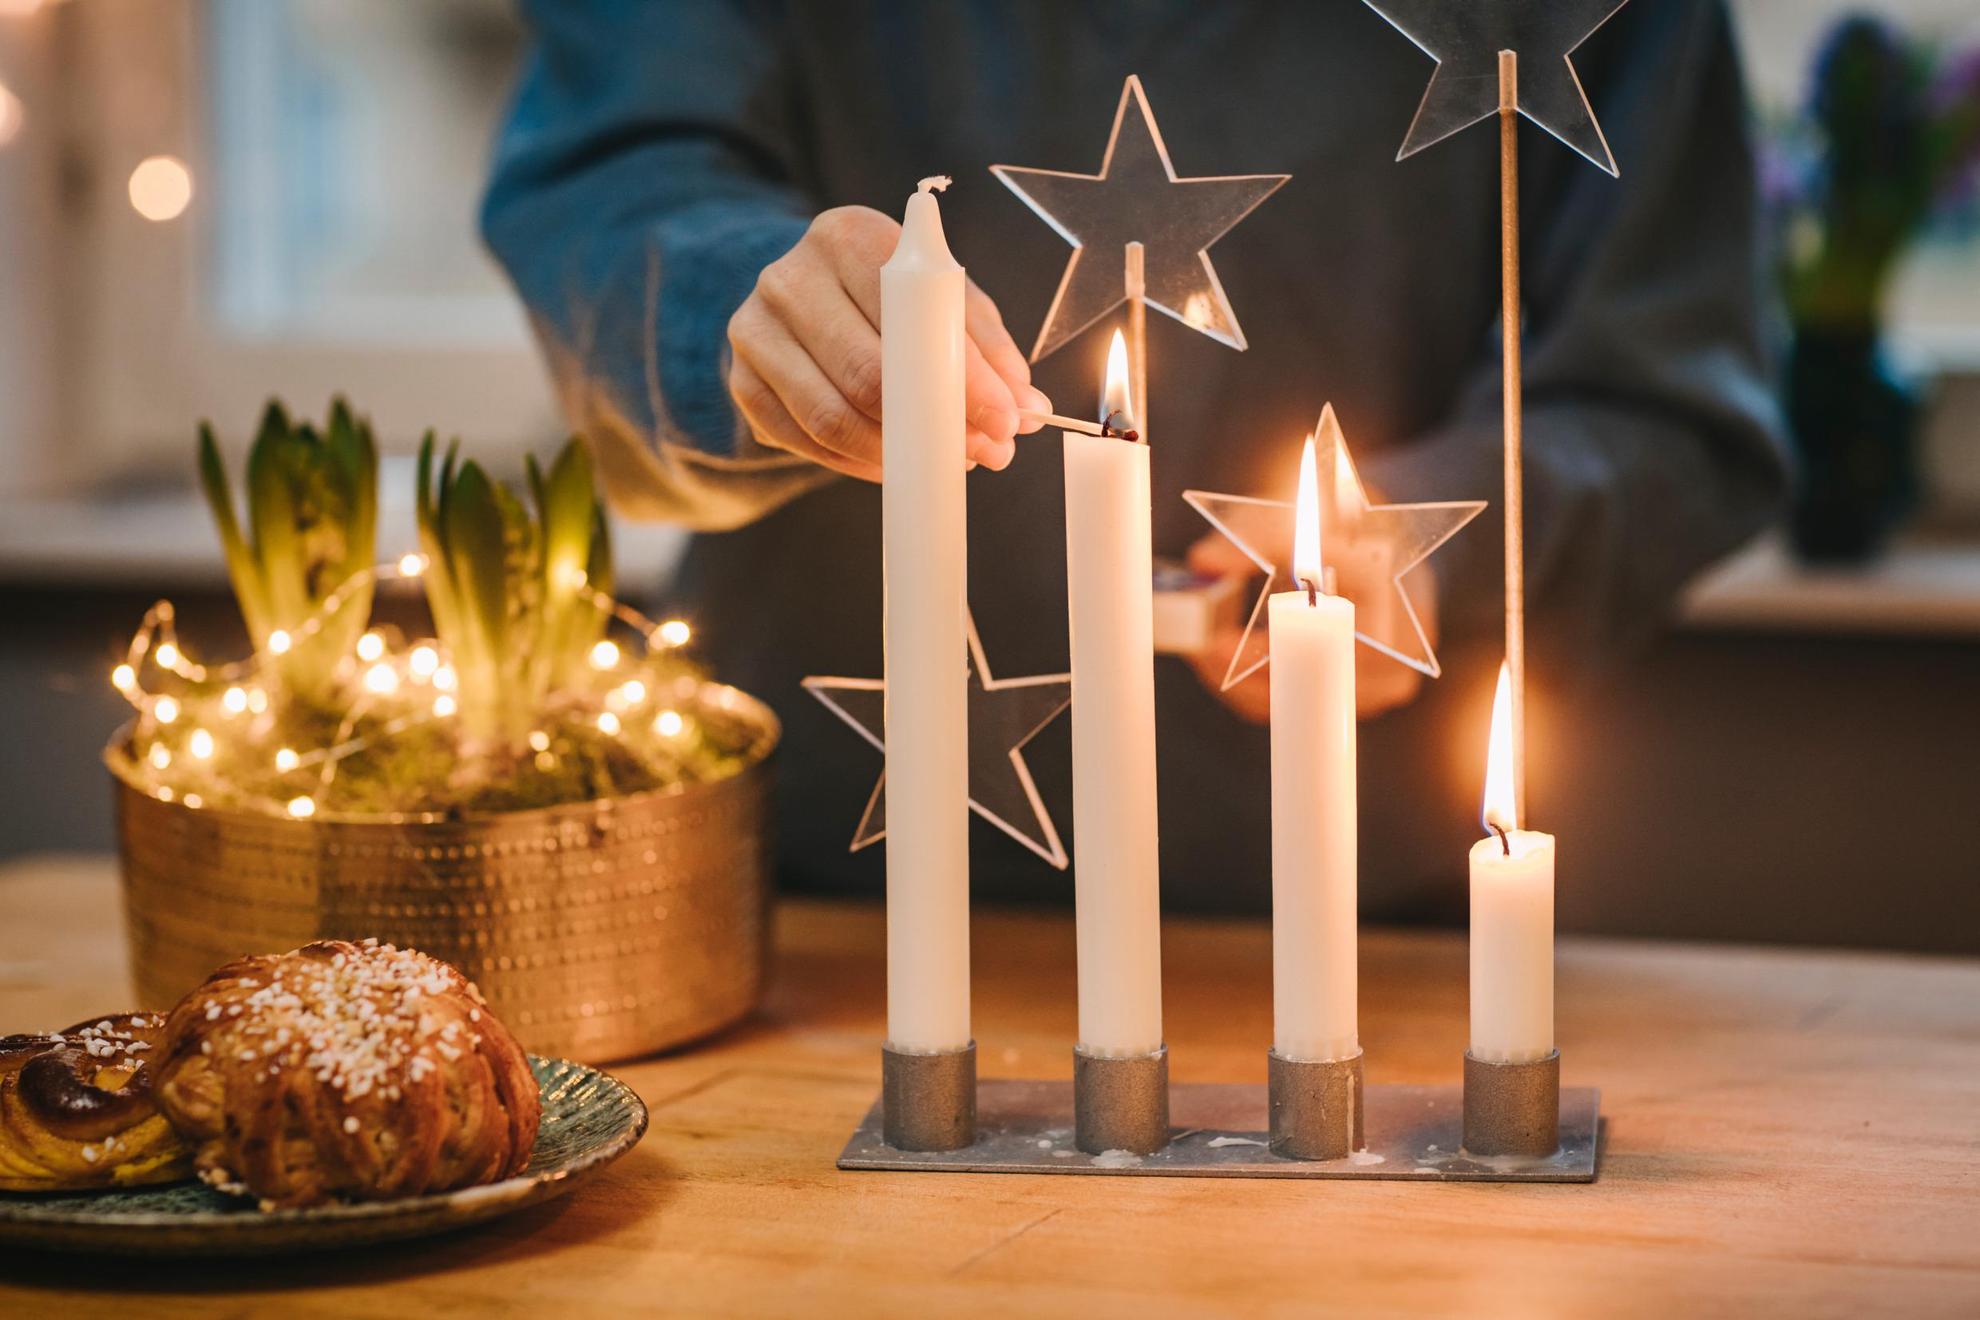 Eine Person zündet die Kerzen eines Adventsgestecks an.